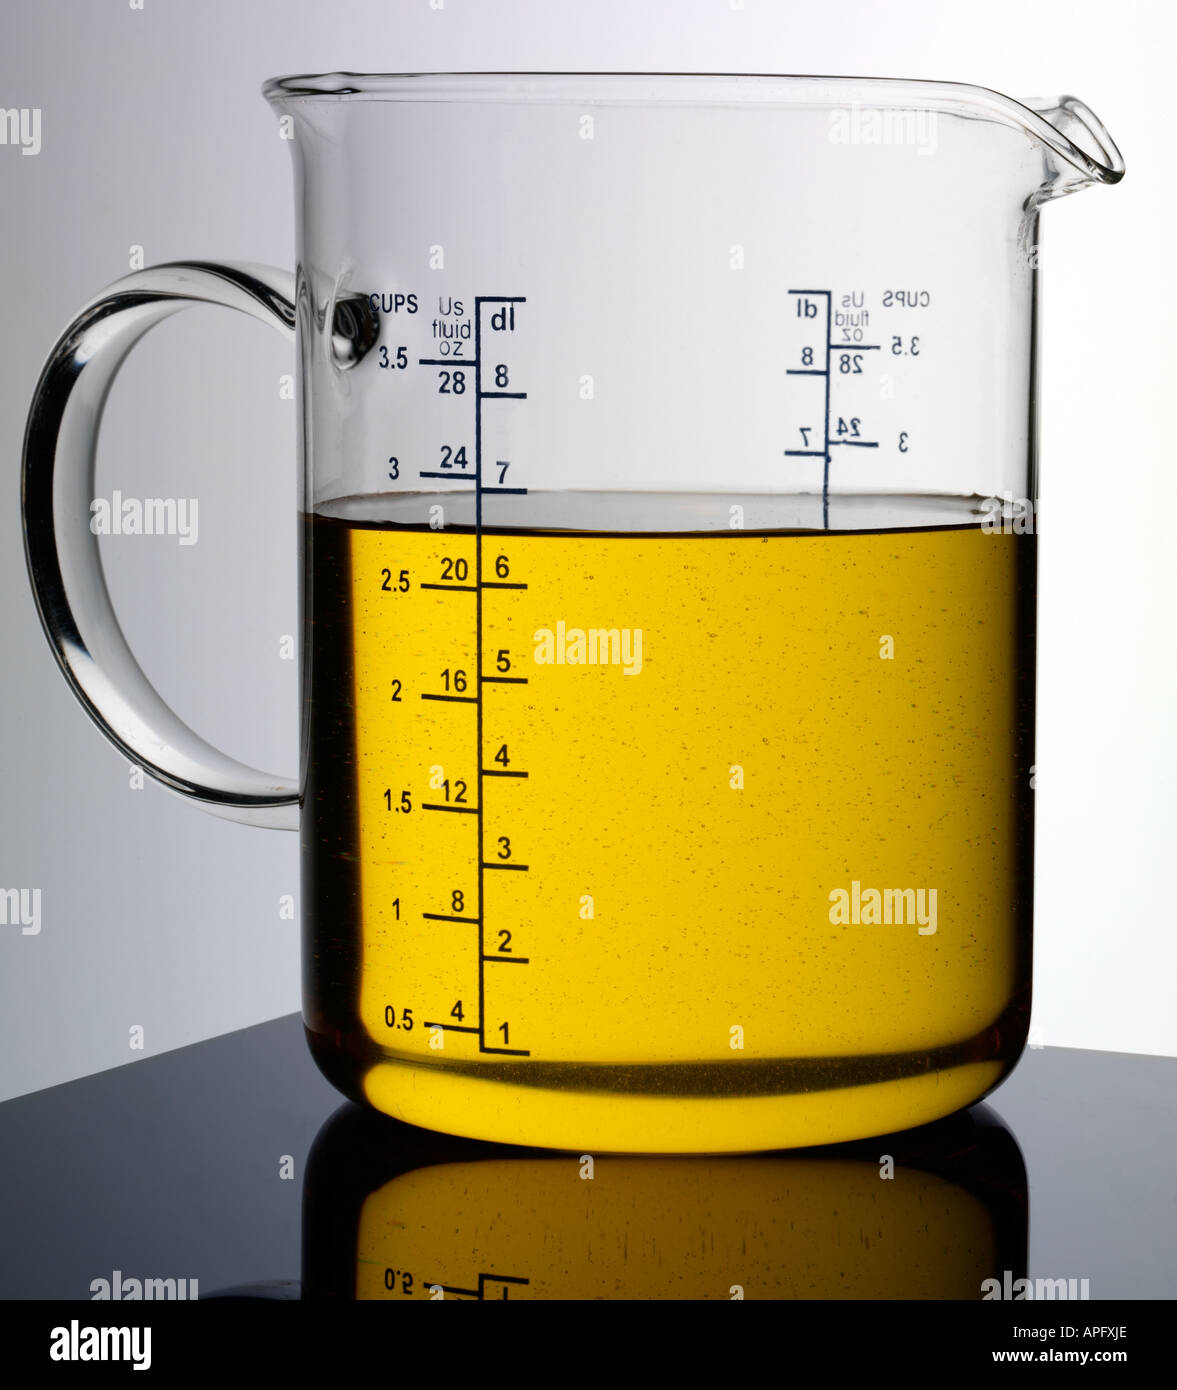 https://c8.alamy.com/comp/APFXJE/measuring-jug-of-vegetable-oil-APFXJE.jpg